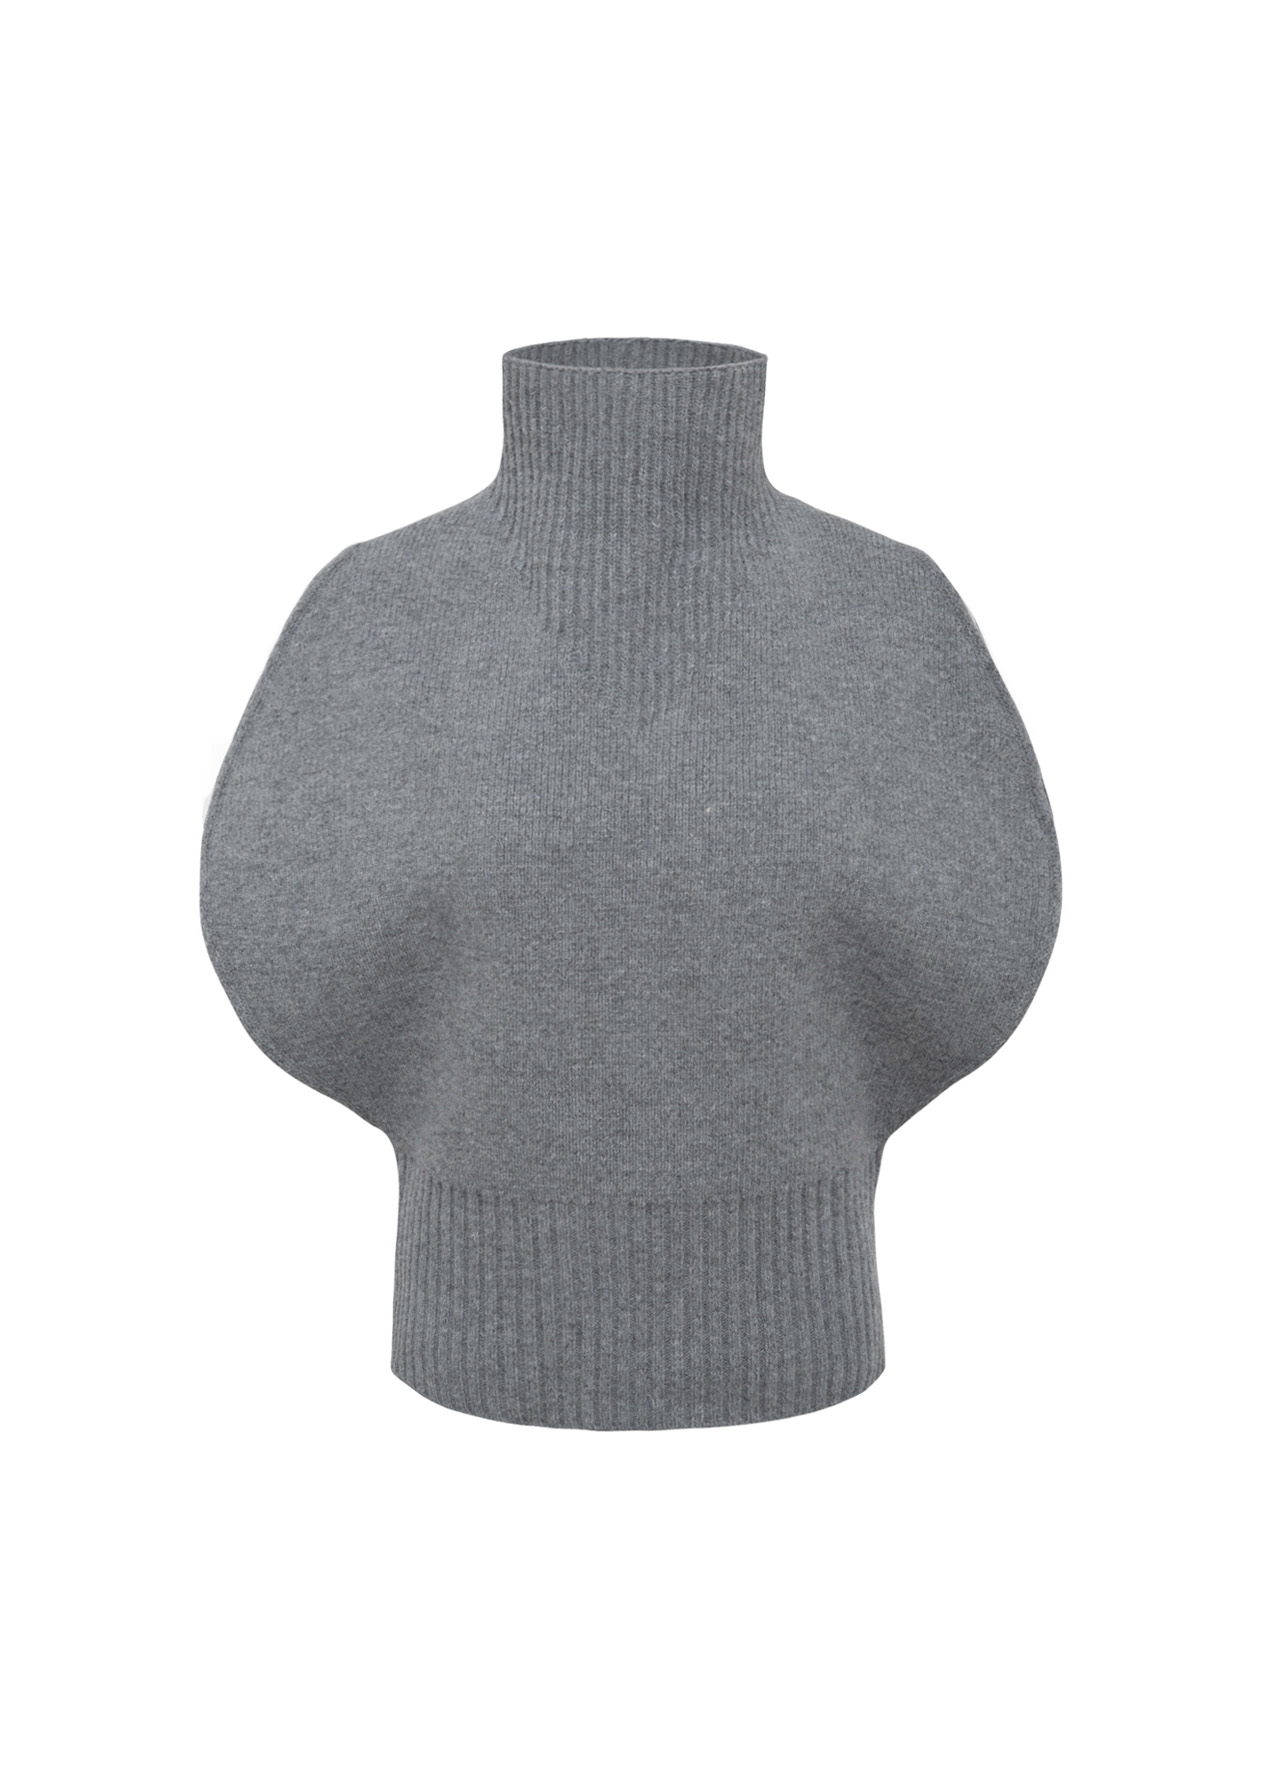 Turtleneck knit vest